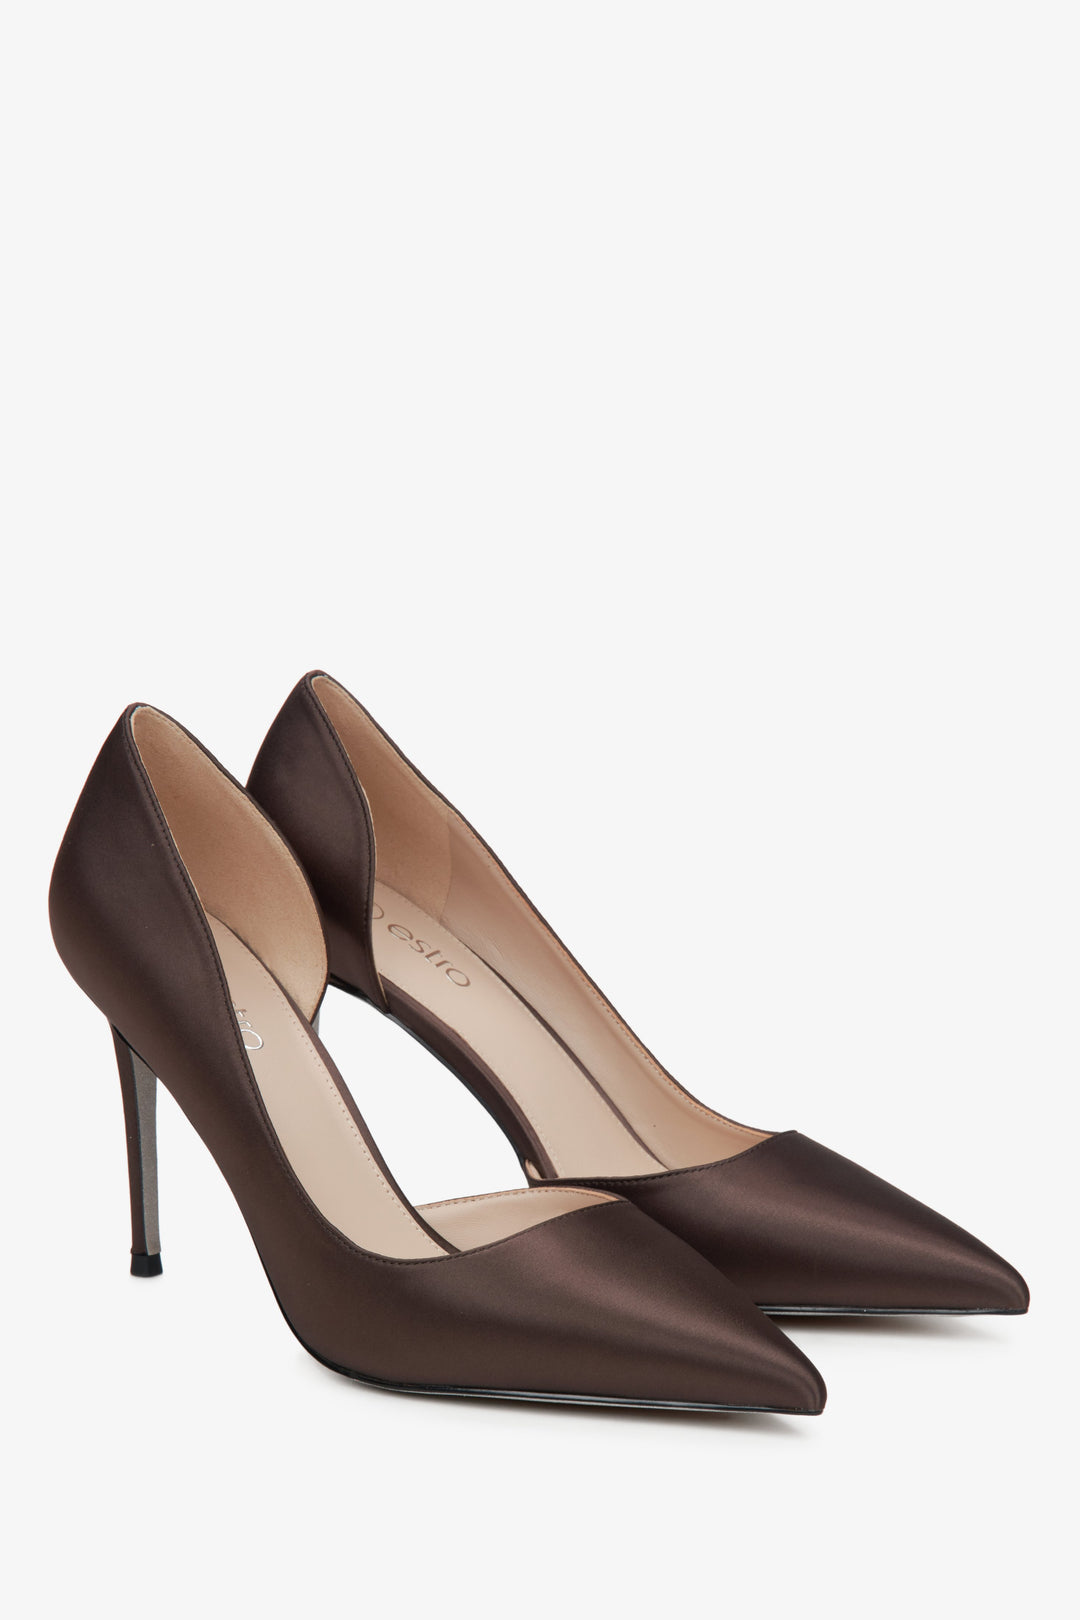 Women's dark brown Estro high heels with a satin finish.